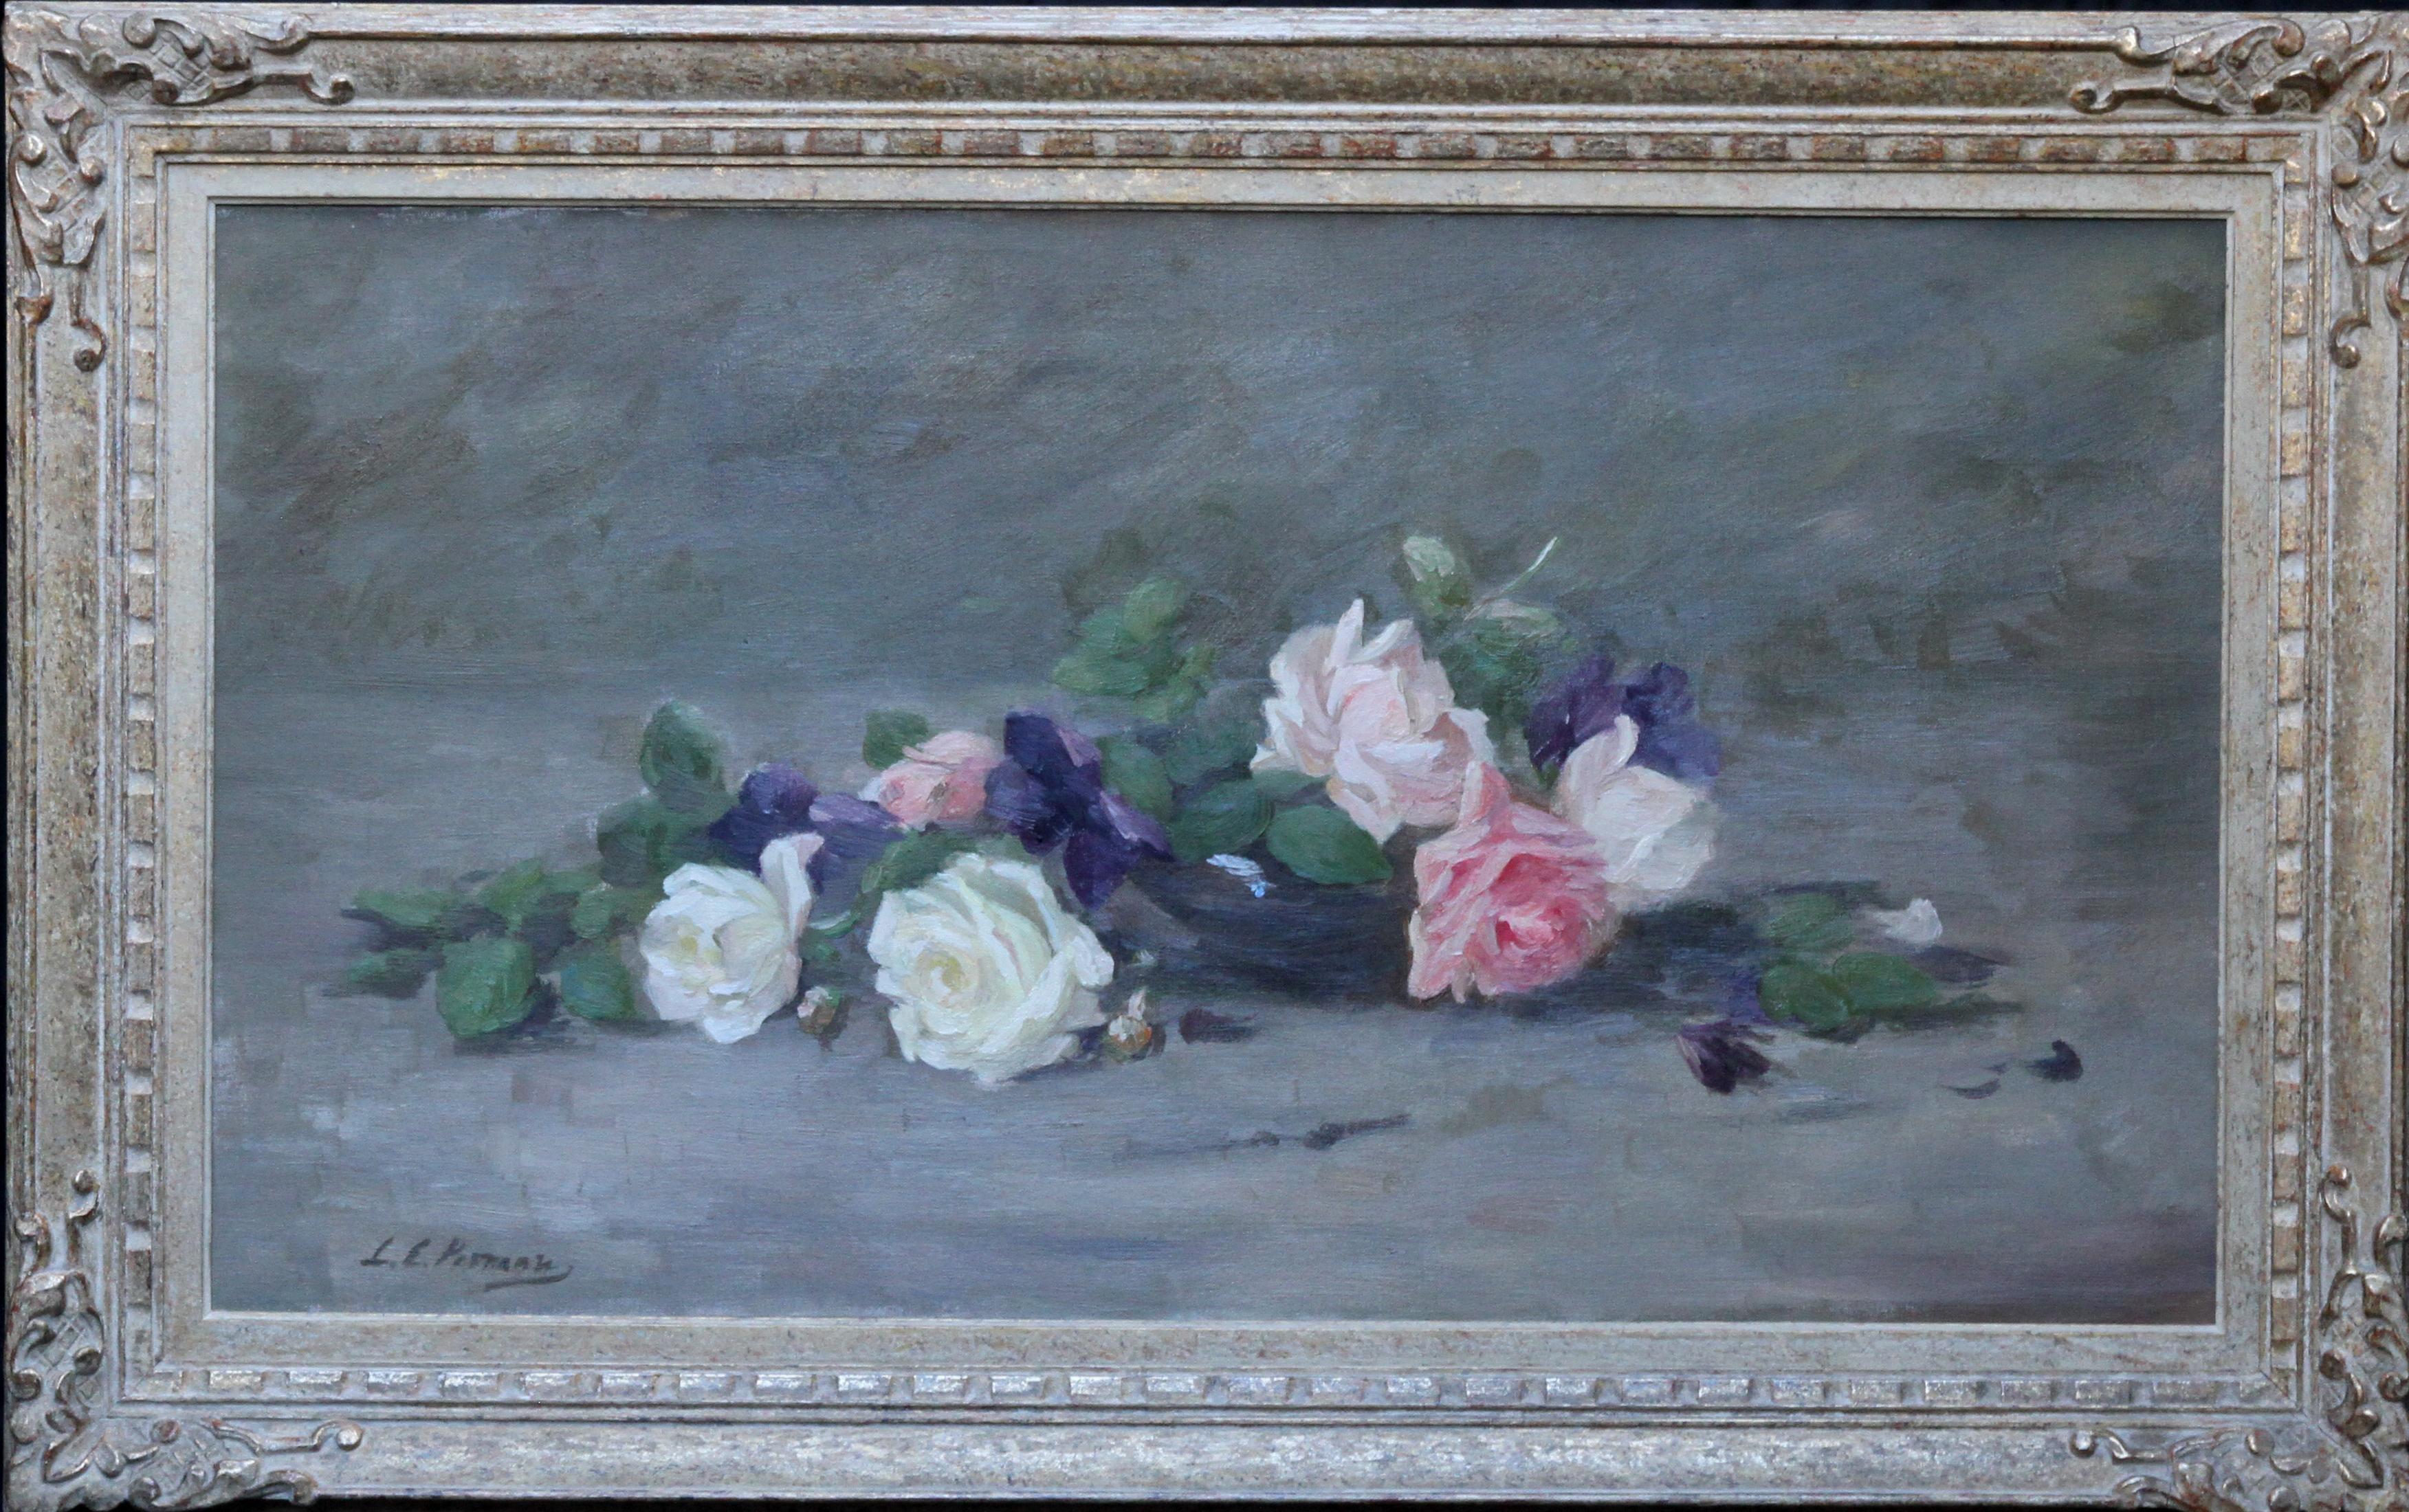 Louise Ellen Perman Still-Life Painting – Rosen und Violette - schottisches edwardianisches Blumengemälde, Ausstellung 1908 RSA